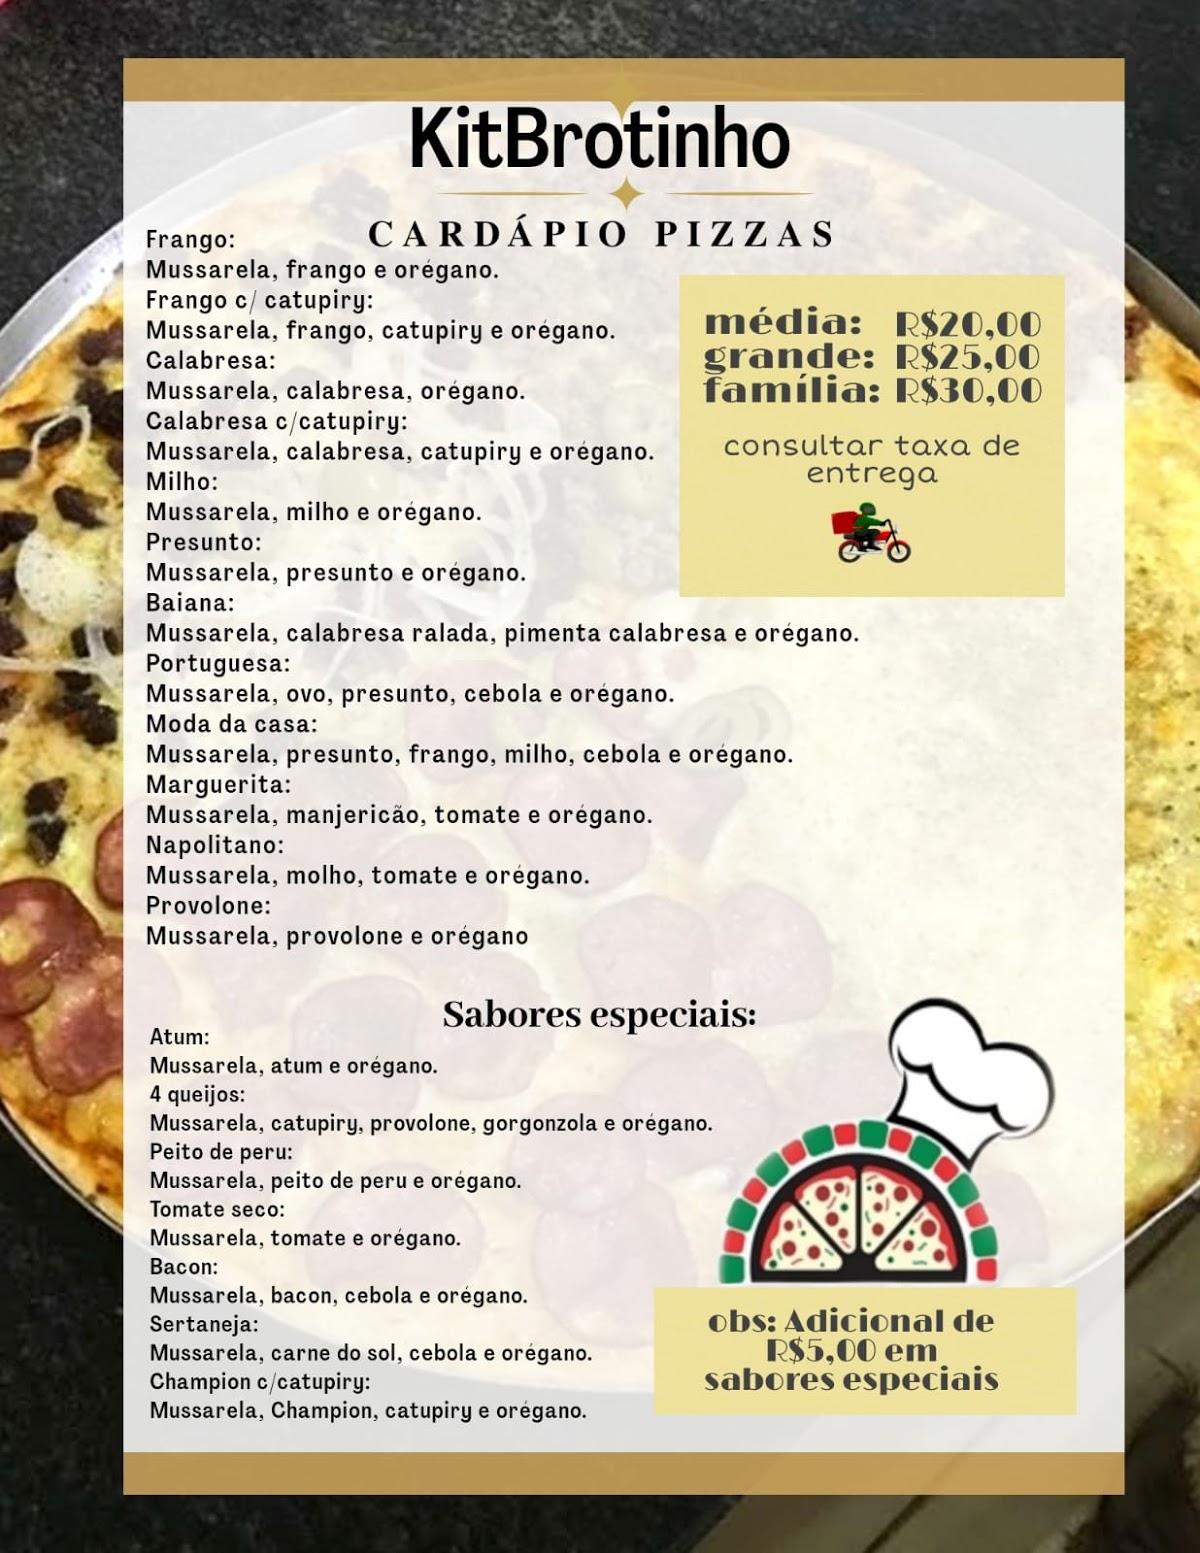 Pizzaria Kit Brotinho, Salvador - cardapio de pizza